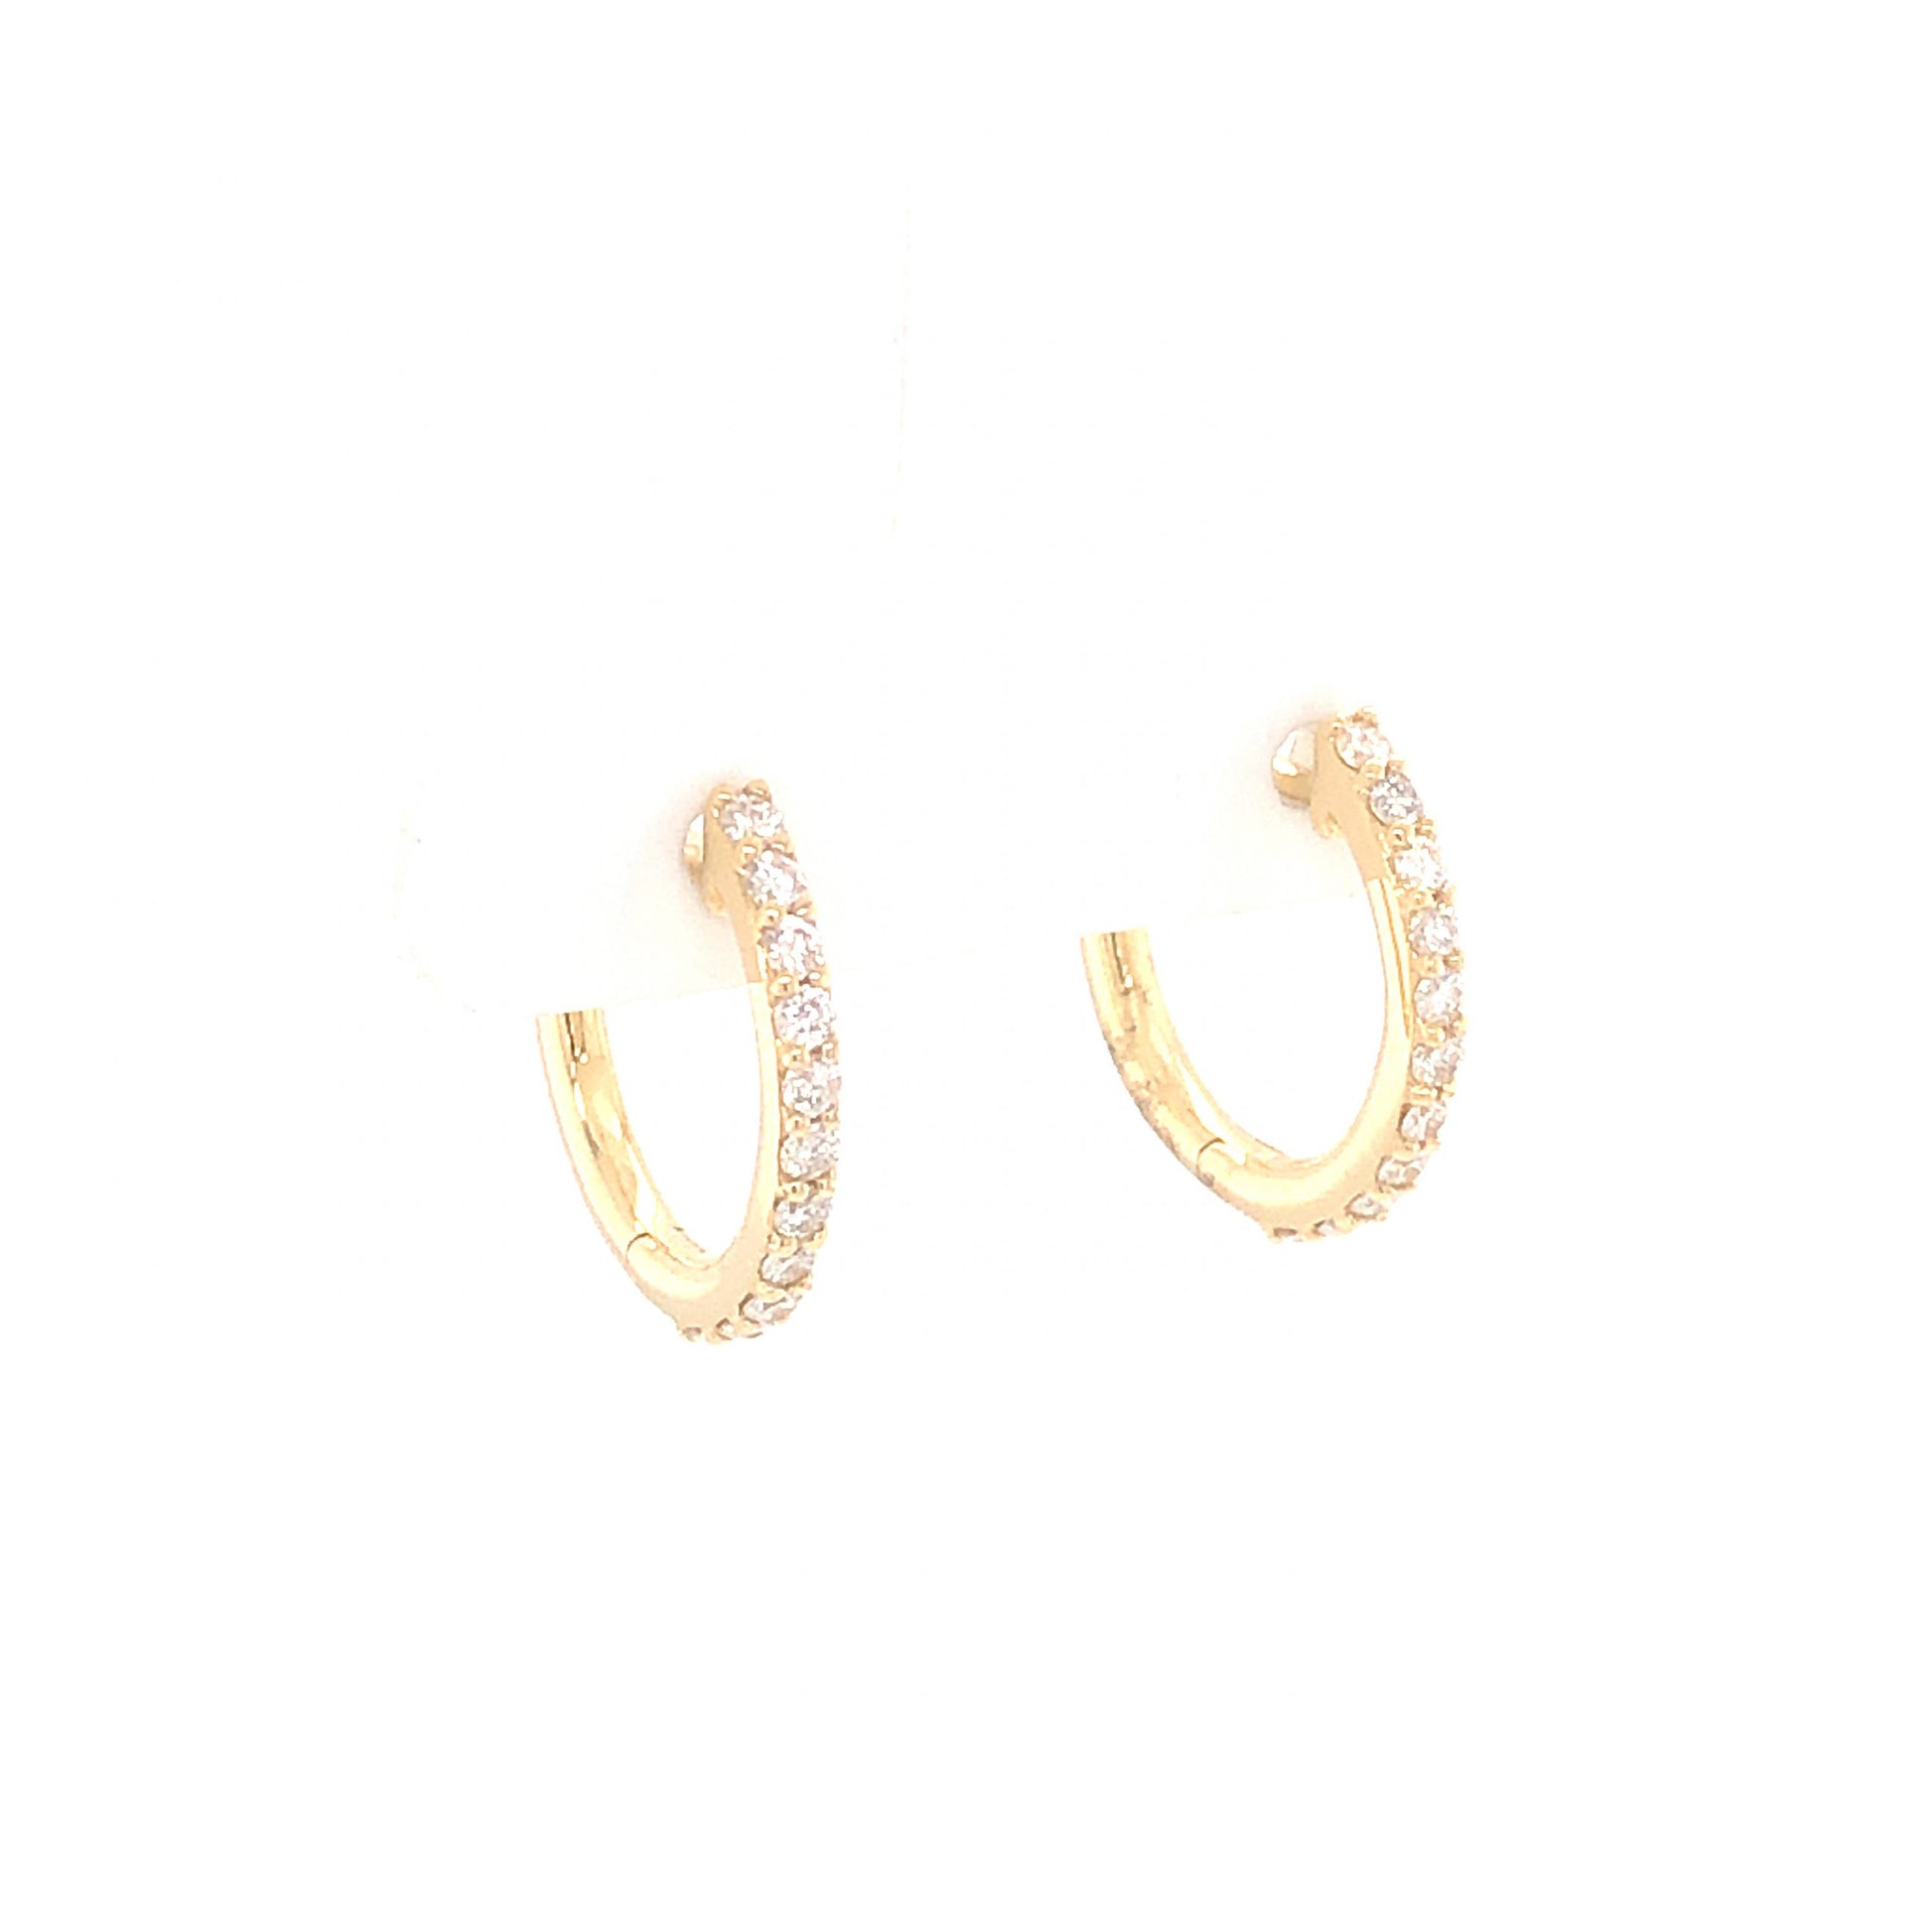 .36 Diamond Hoop Earrings in 14K Yellow Gold